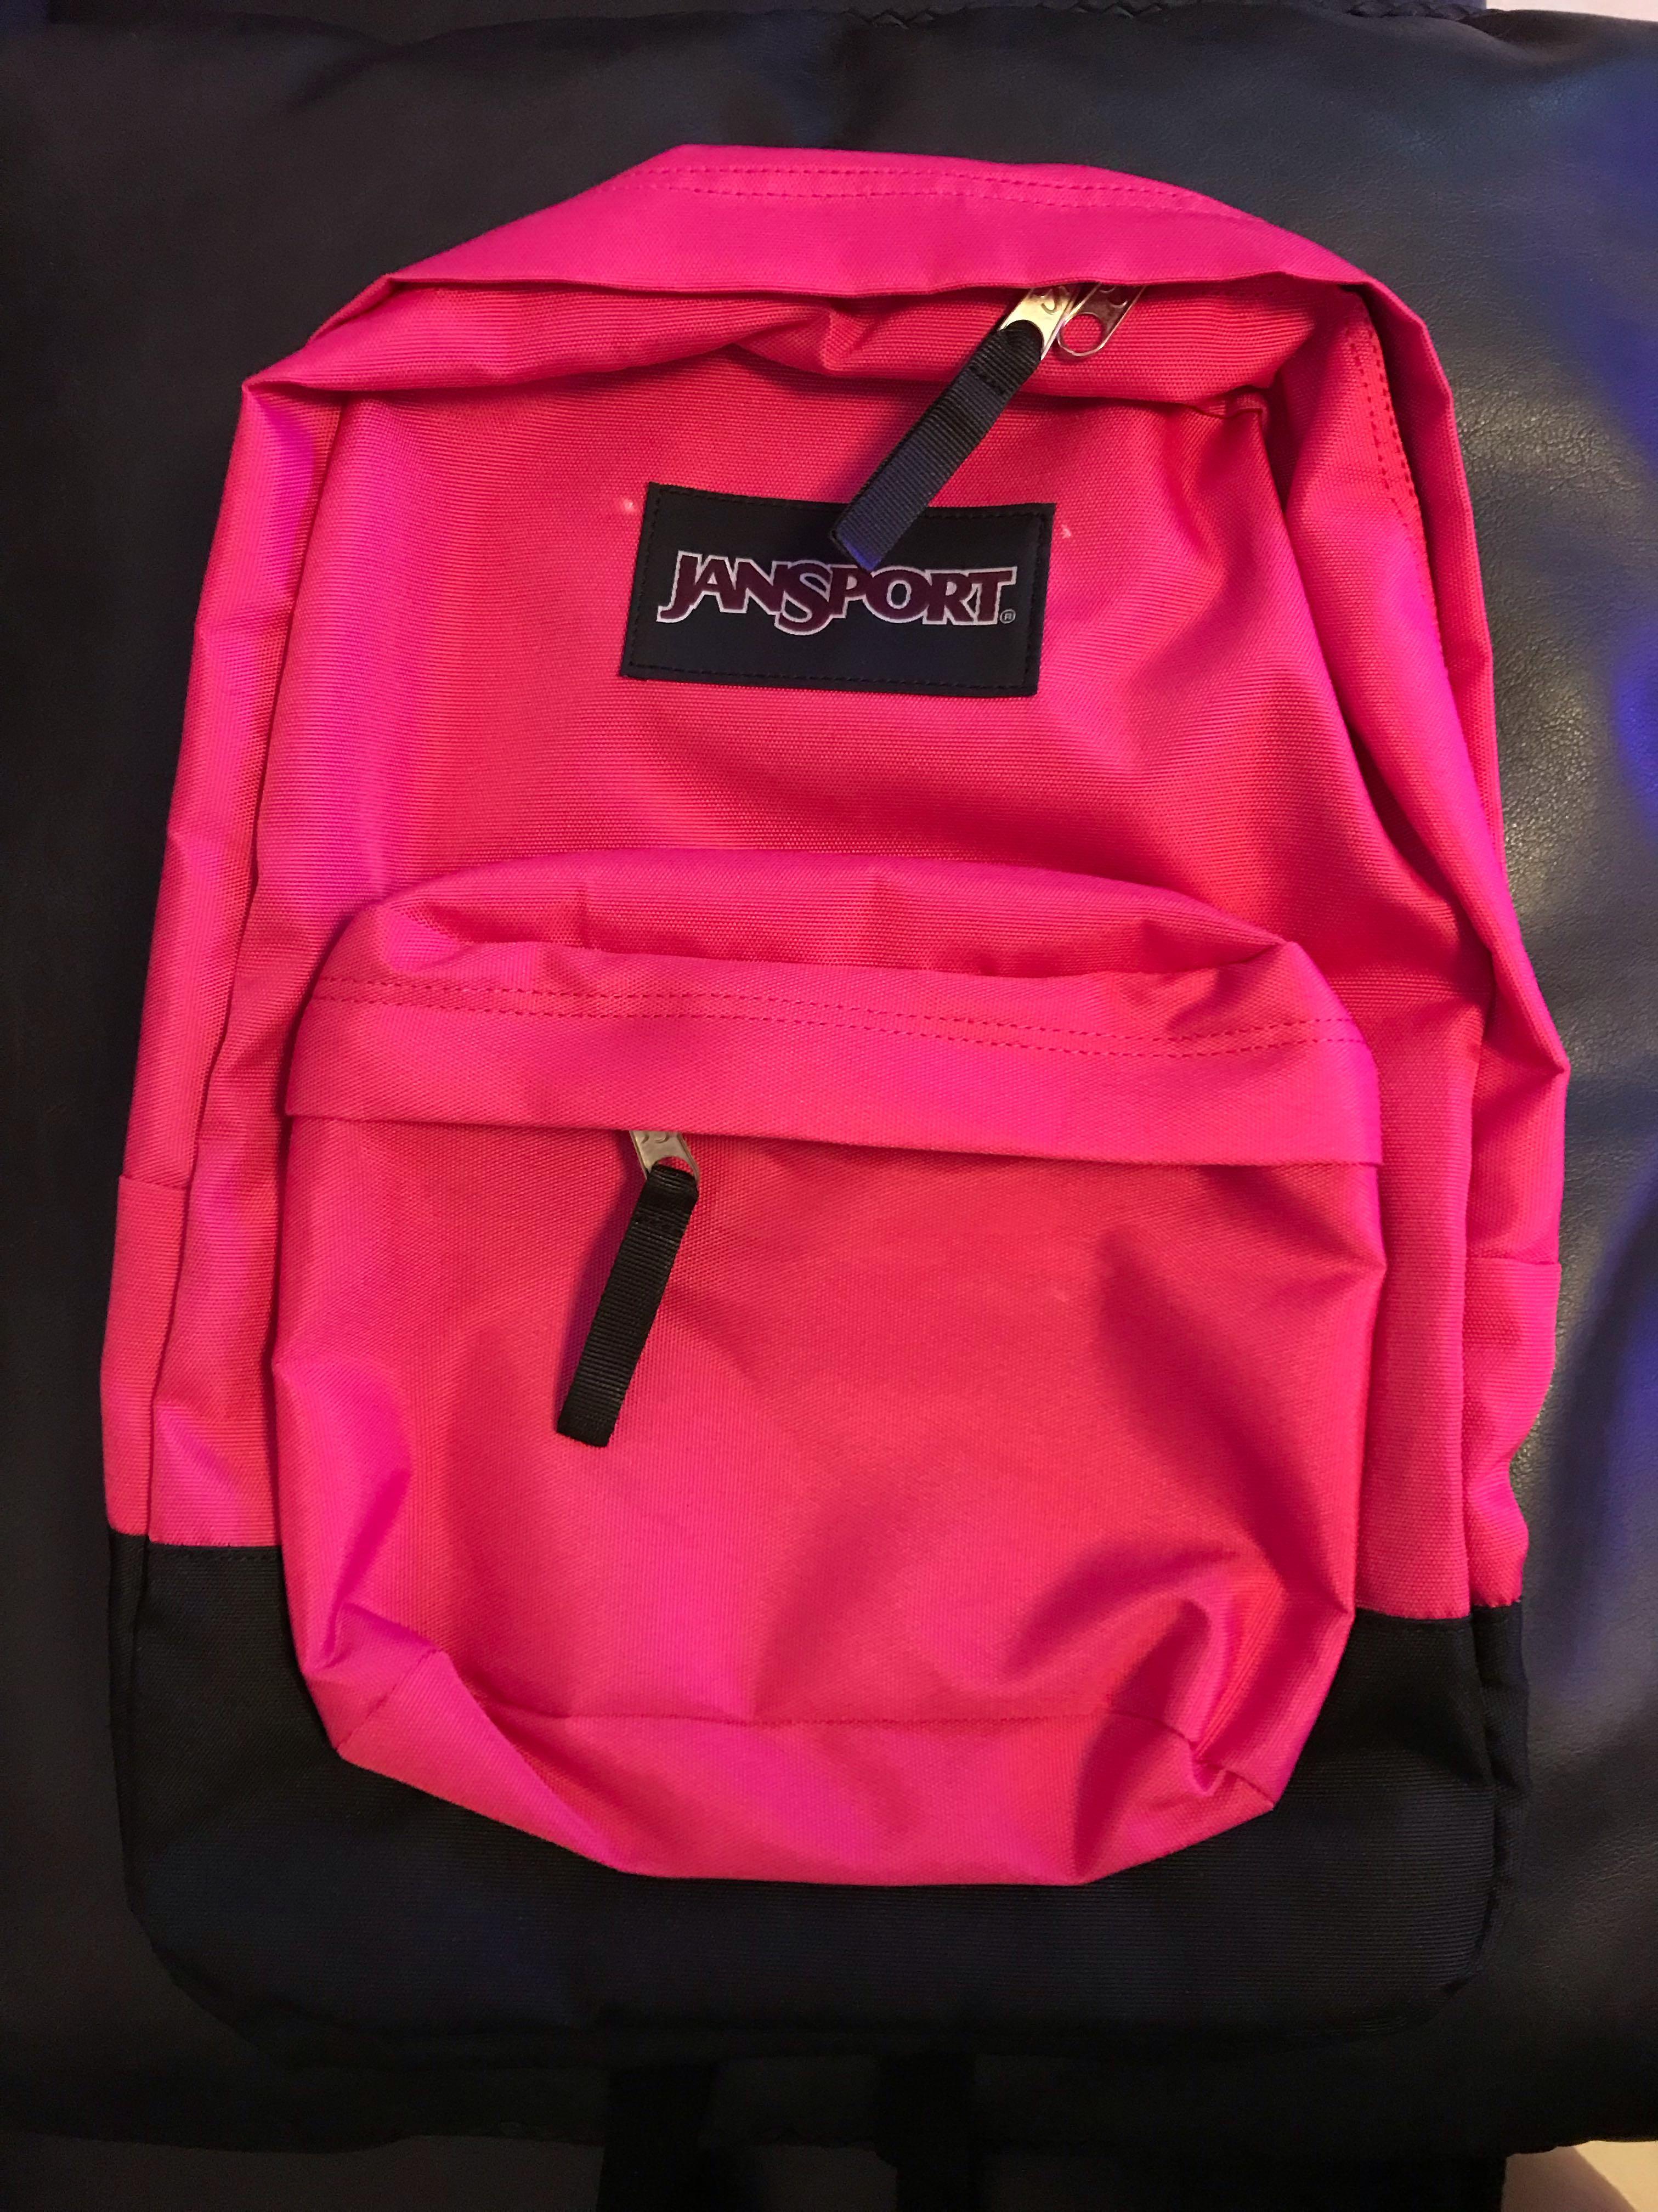 new hotpink jansport backpack